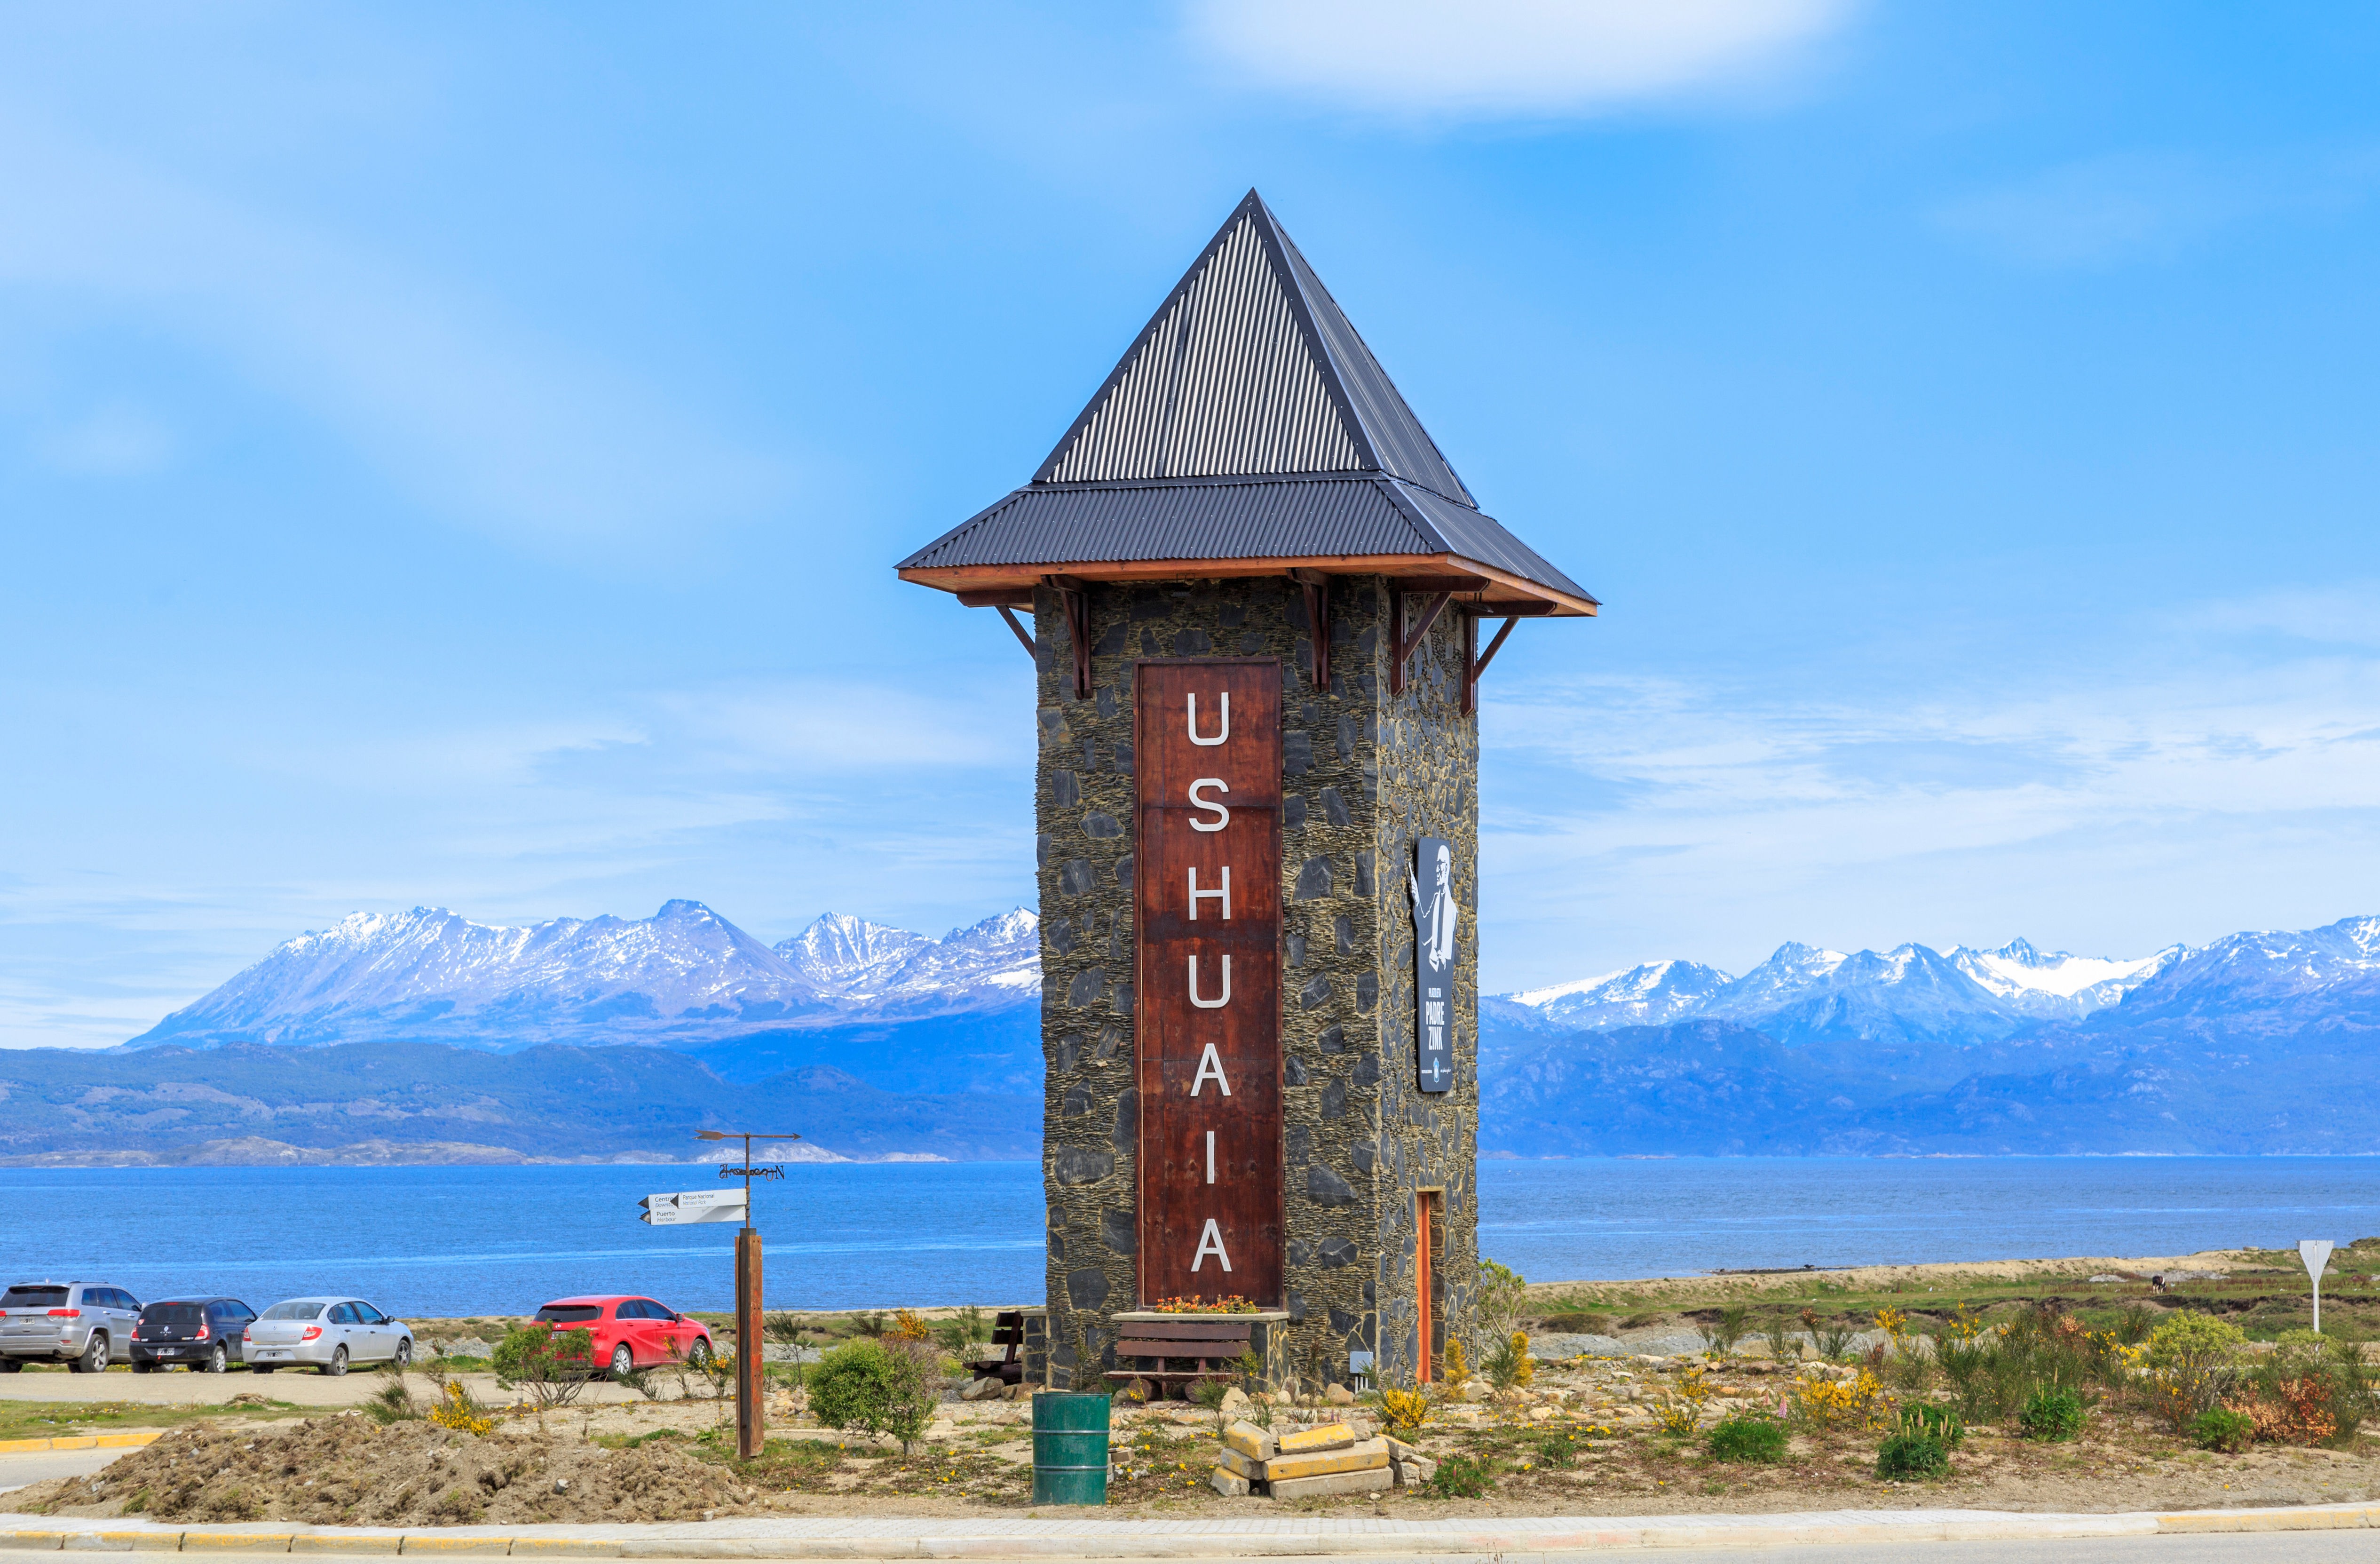 Ushuaia ist die südlichste Stadt Argentiniens und liegt am Beagle-Kanal.